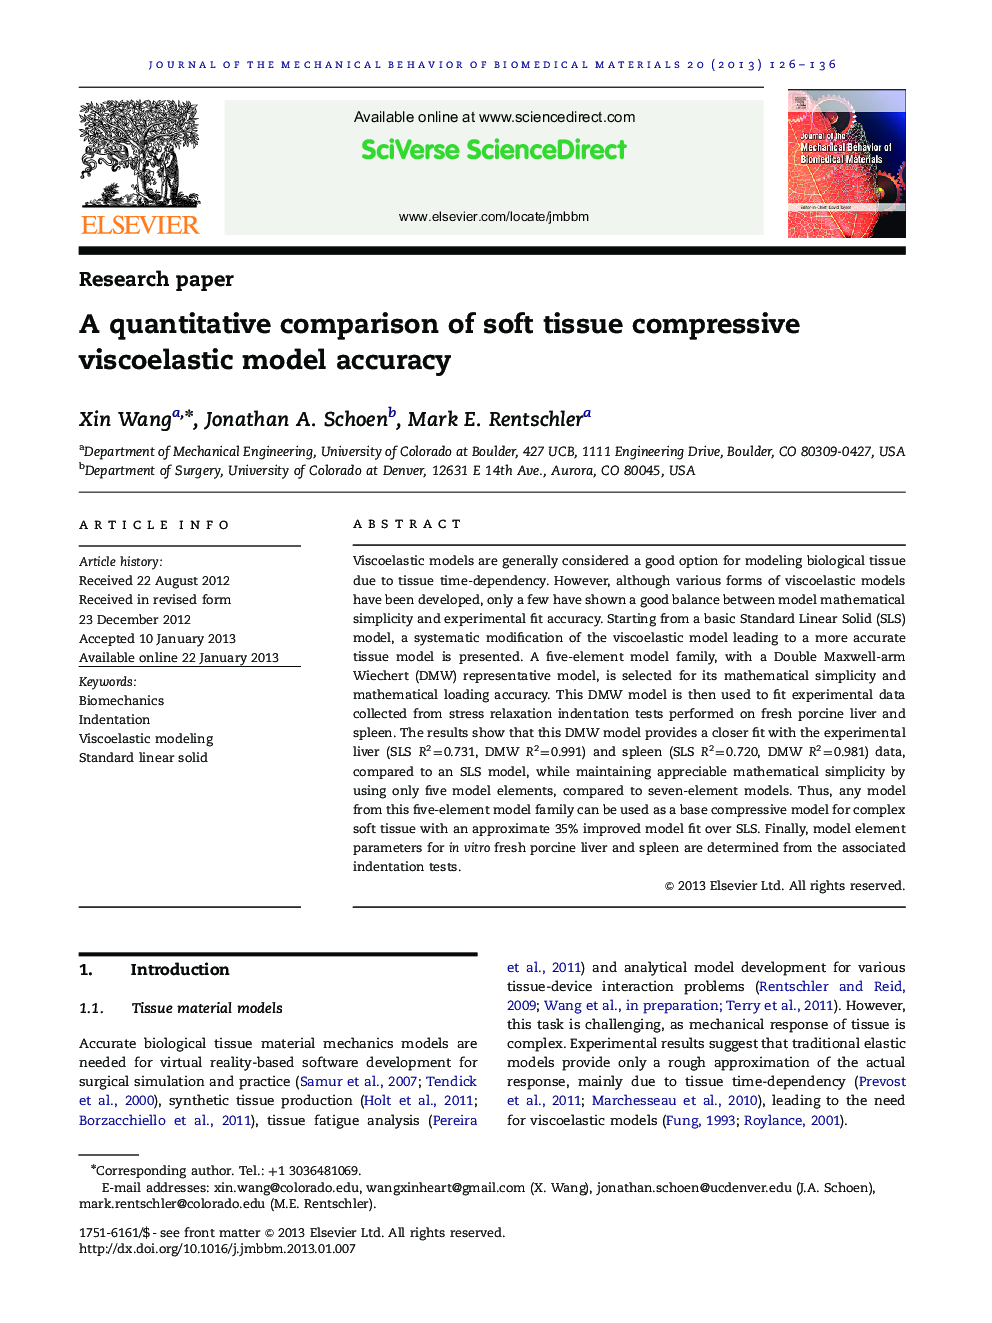 A quantitative comparison of soft tissue compressive viscoelastic model accuracy